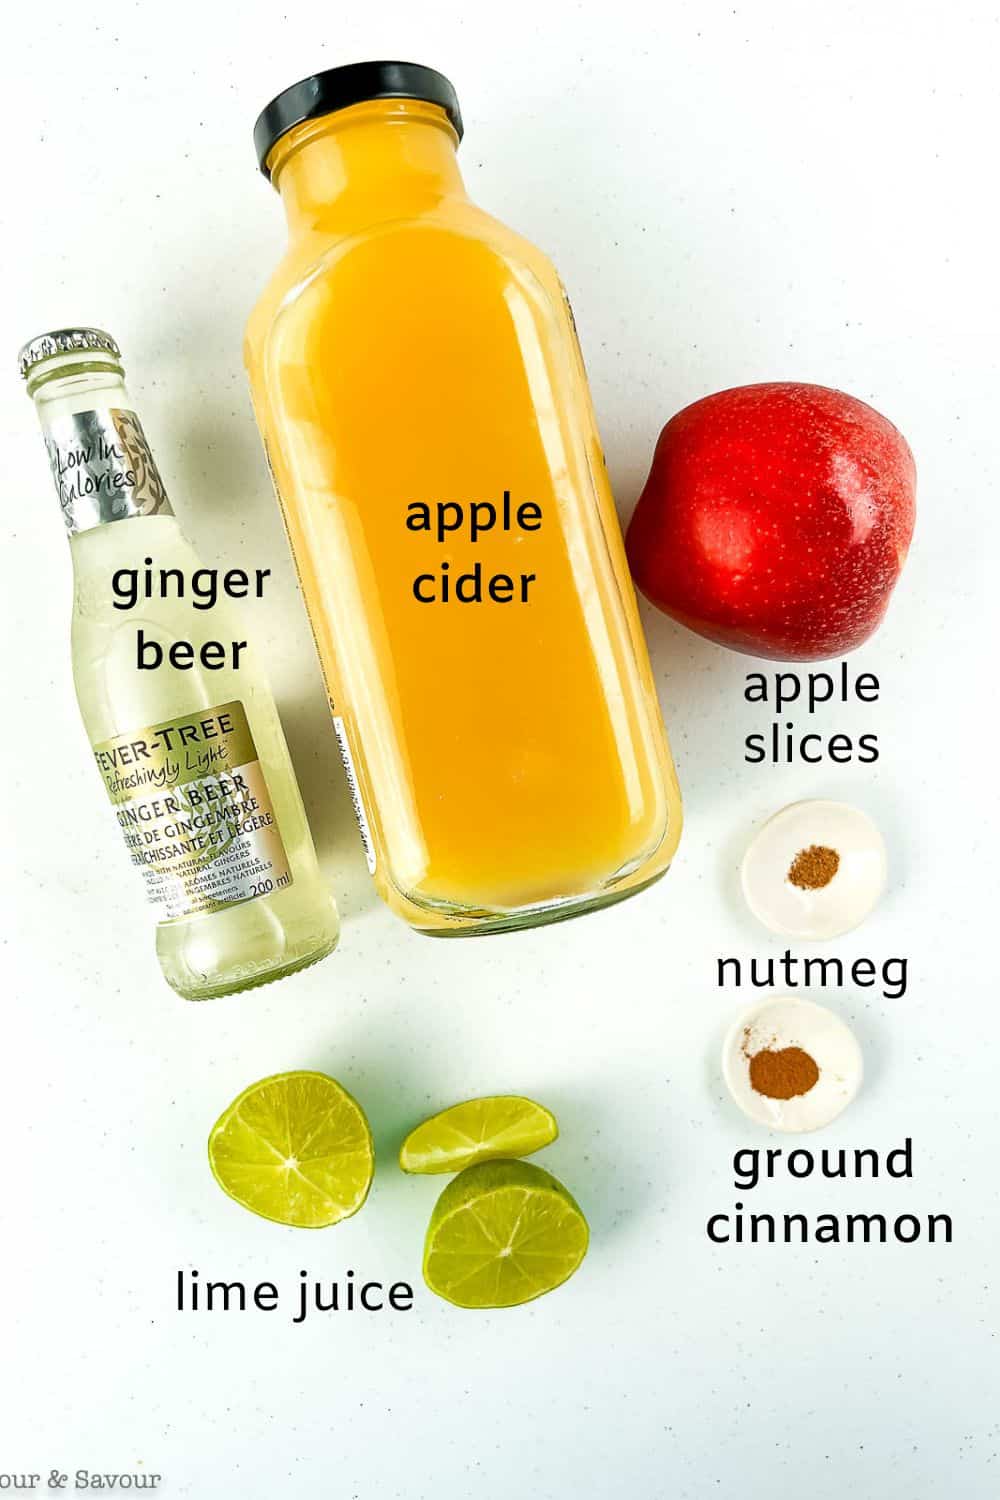 Labelled ingredients for apple cider ginger beer mocktail.